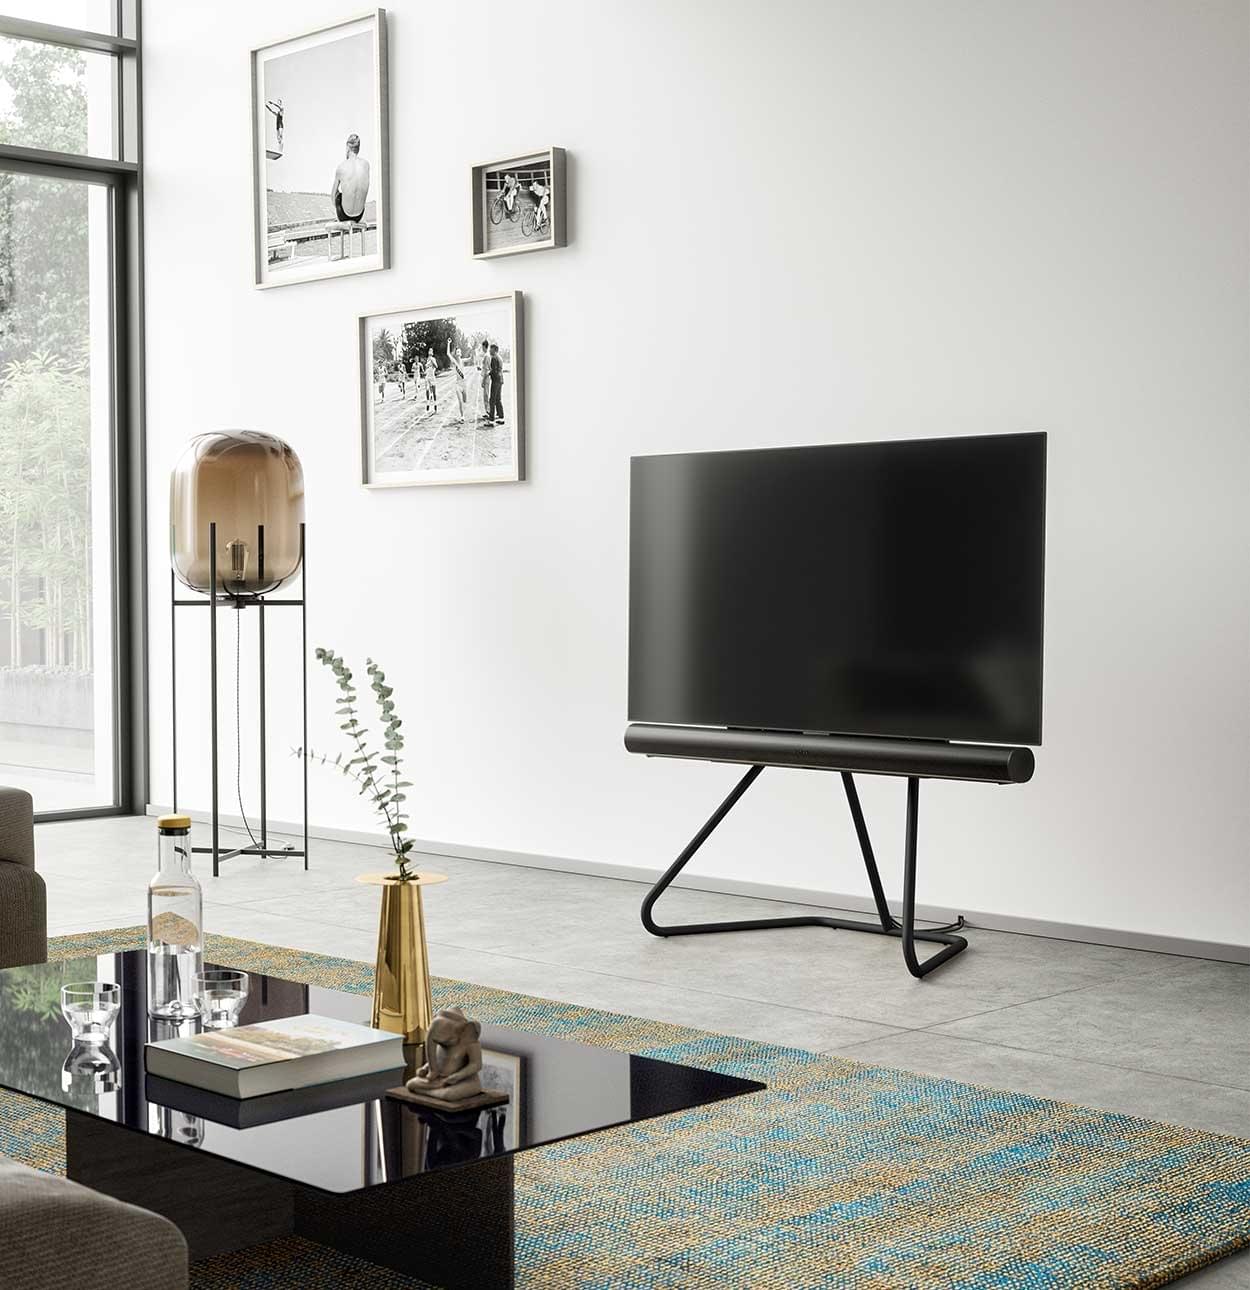 Leia inleveren karakter Spectral tv-standaards als design tv-stand passend voor elk interieur. -  Spectral.nl